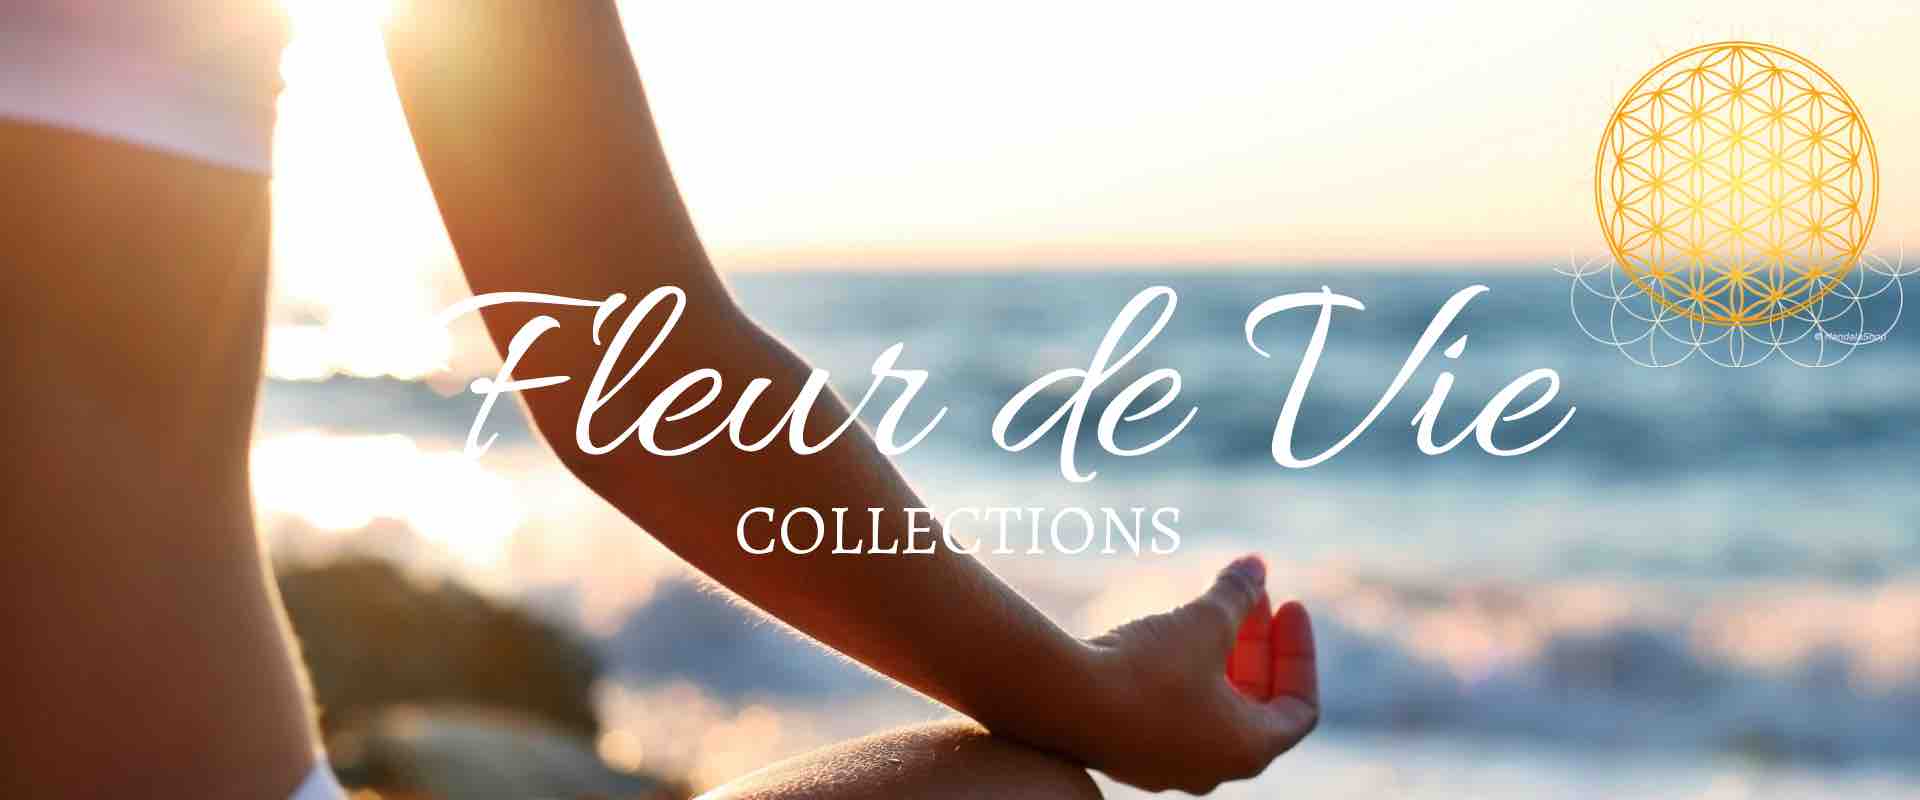 Fleur-de-Vie-Collections-FR.jpg